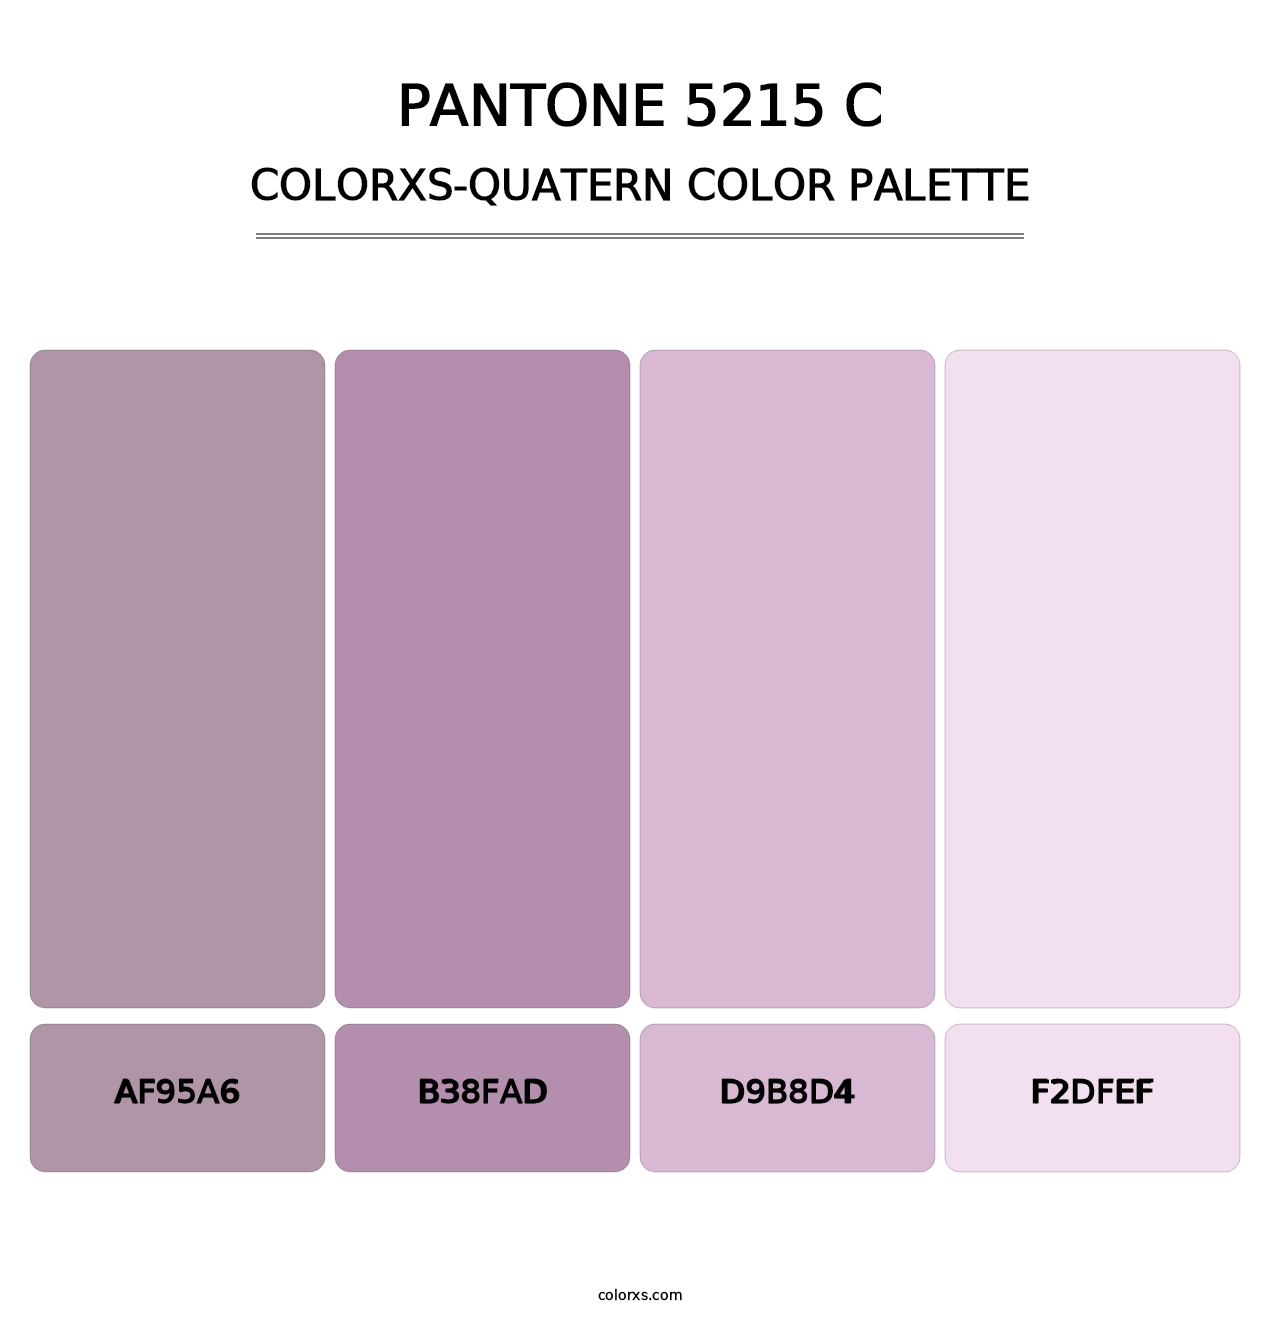 PANTONE 5215 C - Colorxs Quatern Palette